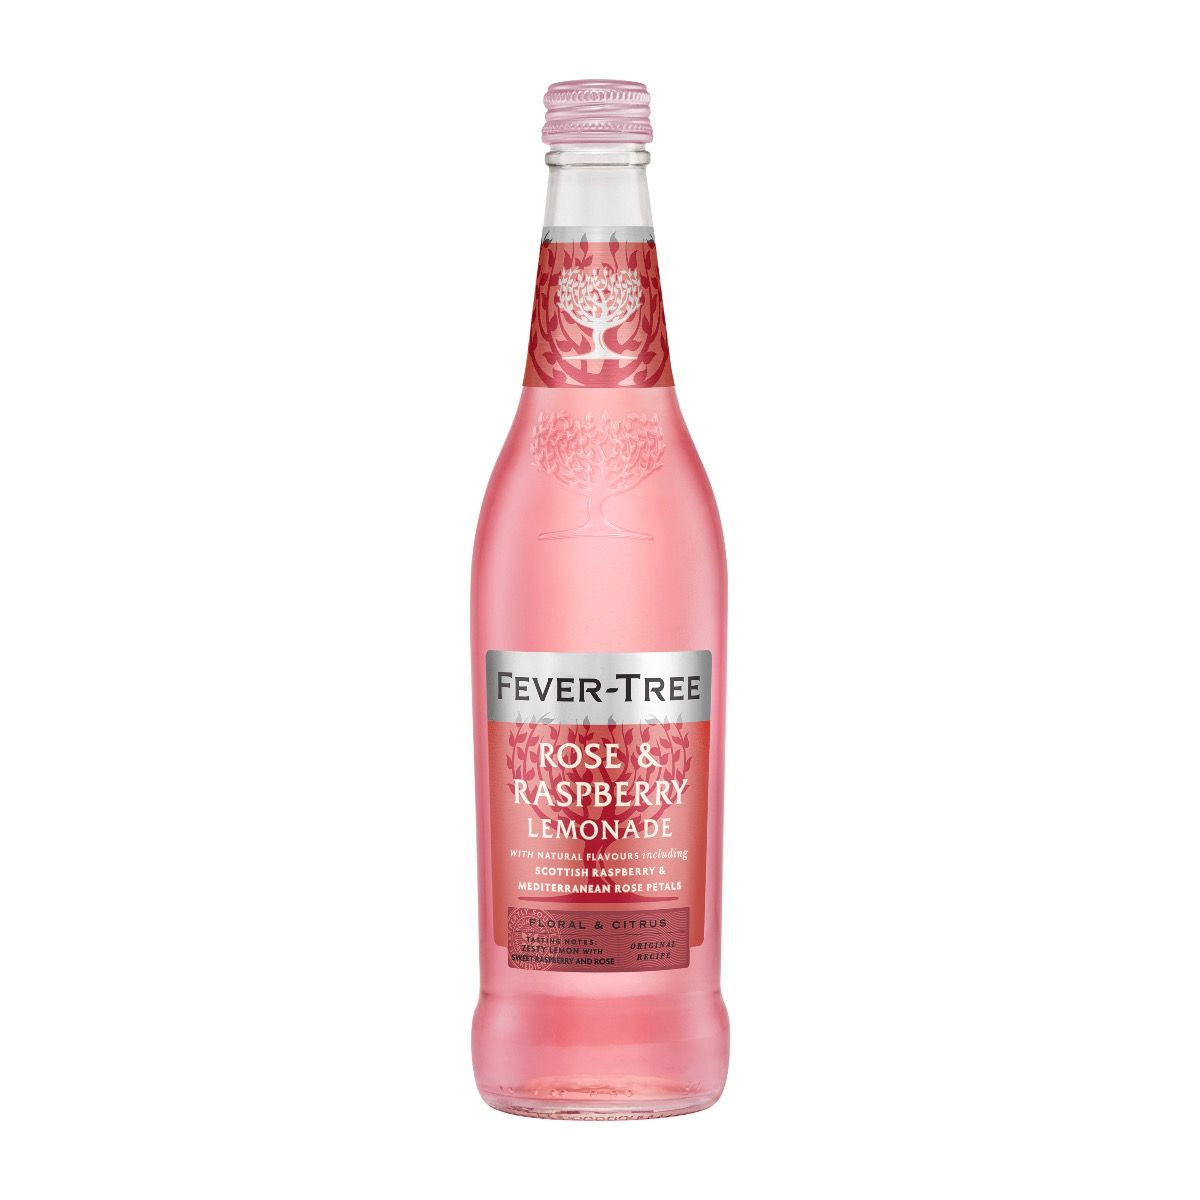 Brug Fever-Tree Rose & Raspberry Lemonade 500 ml - OBS bedst før 02.24 til en forbedret oplevelse